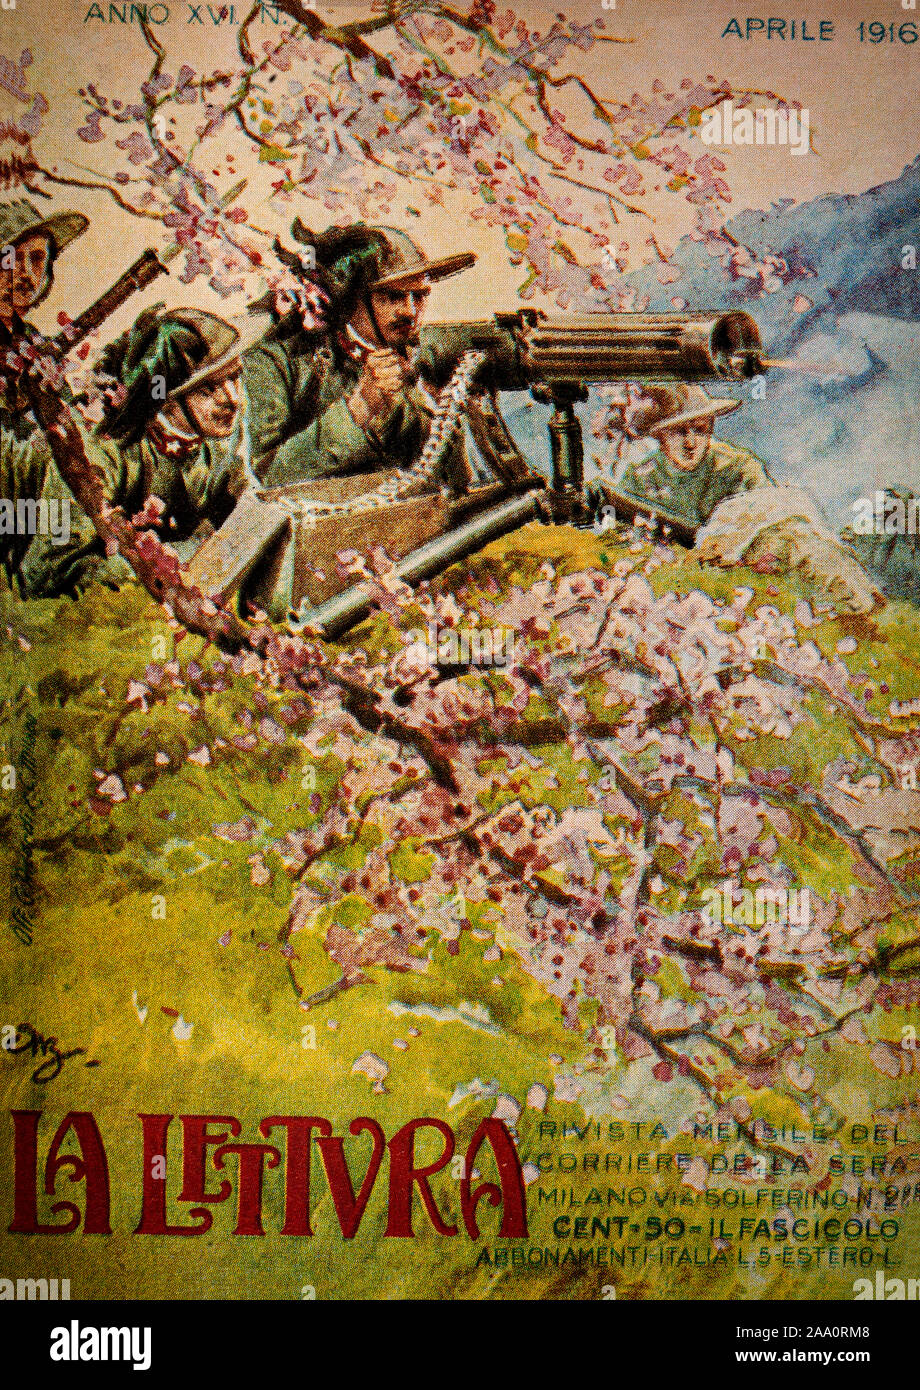 Un coperchio shot illustrante idealizzato Alpini durante la loro 1917 lotta con gli austriaci. Da La Lettura, un illustrata rivista mensile. Foto Stock